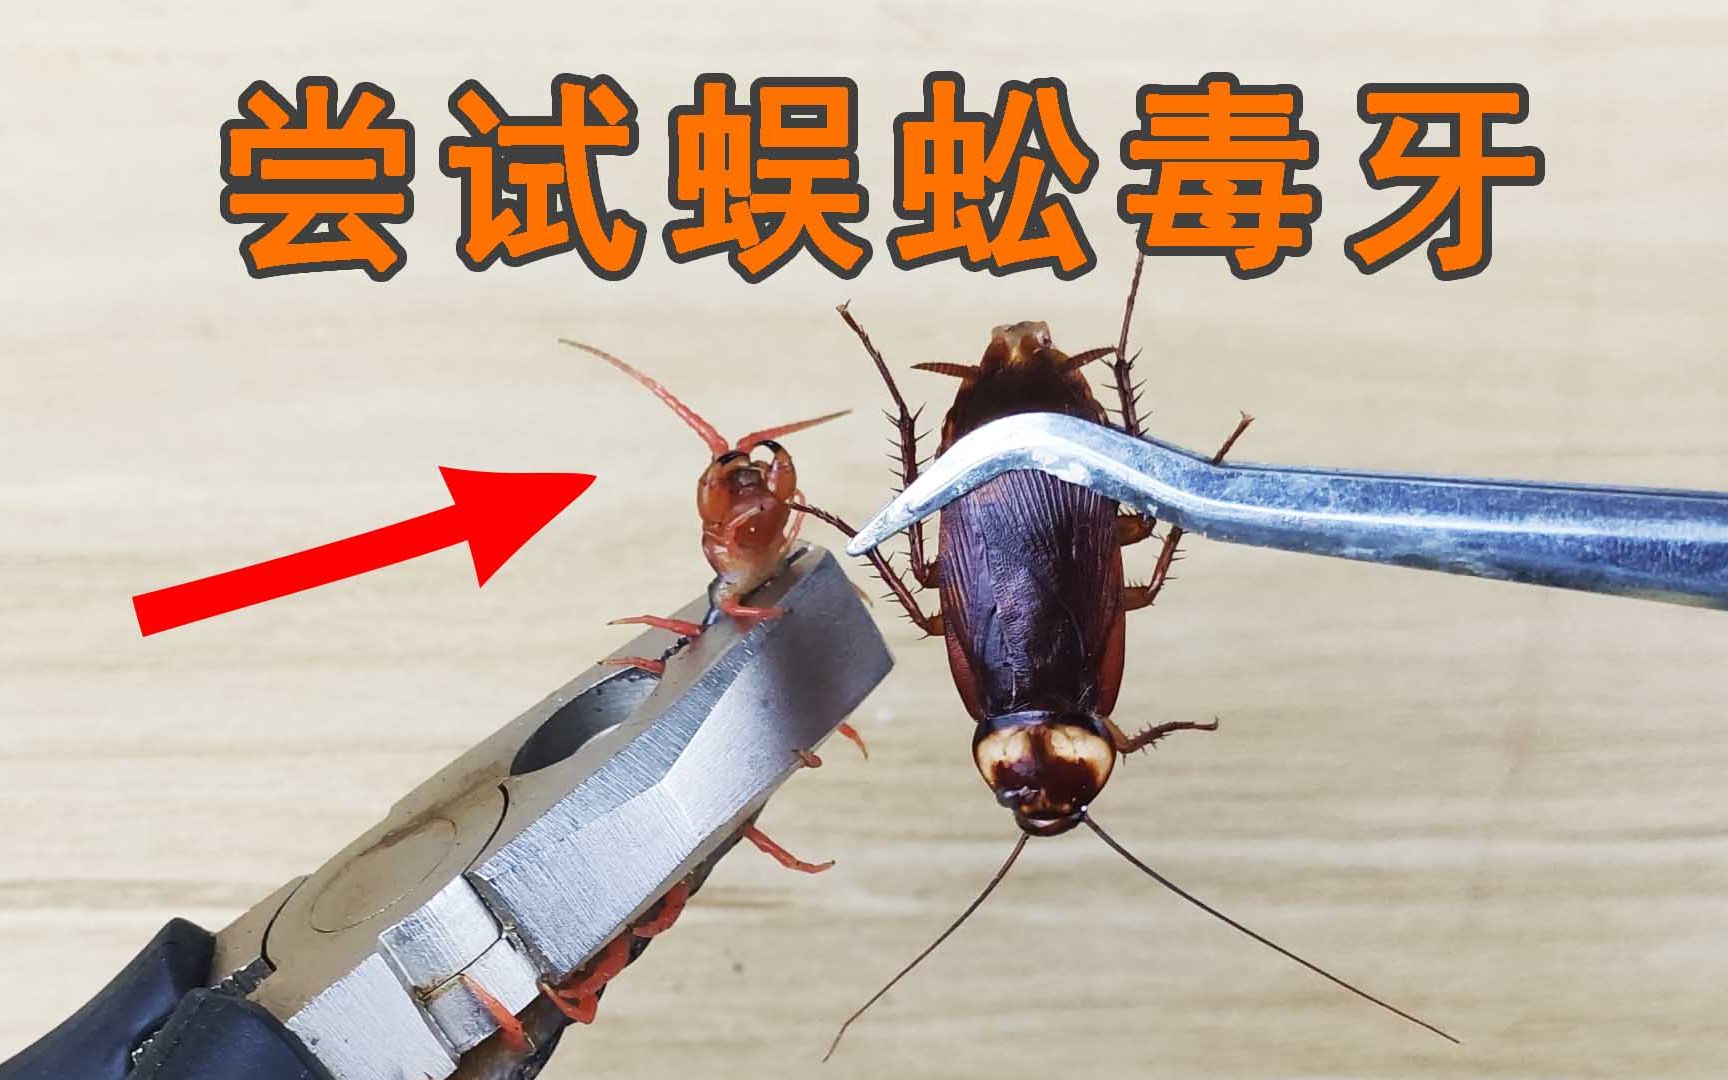 蜈蚣的毒牙到底有多厉害?咬一只蟑螂试试就知道了!